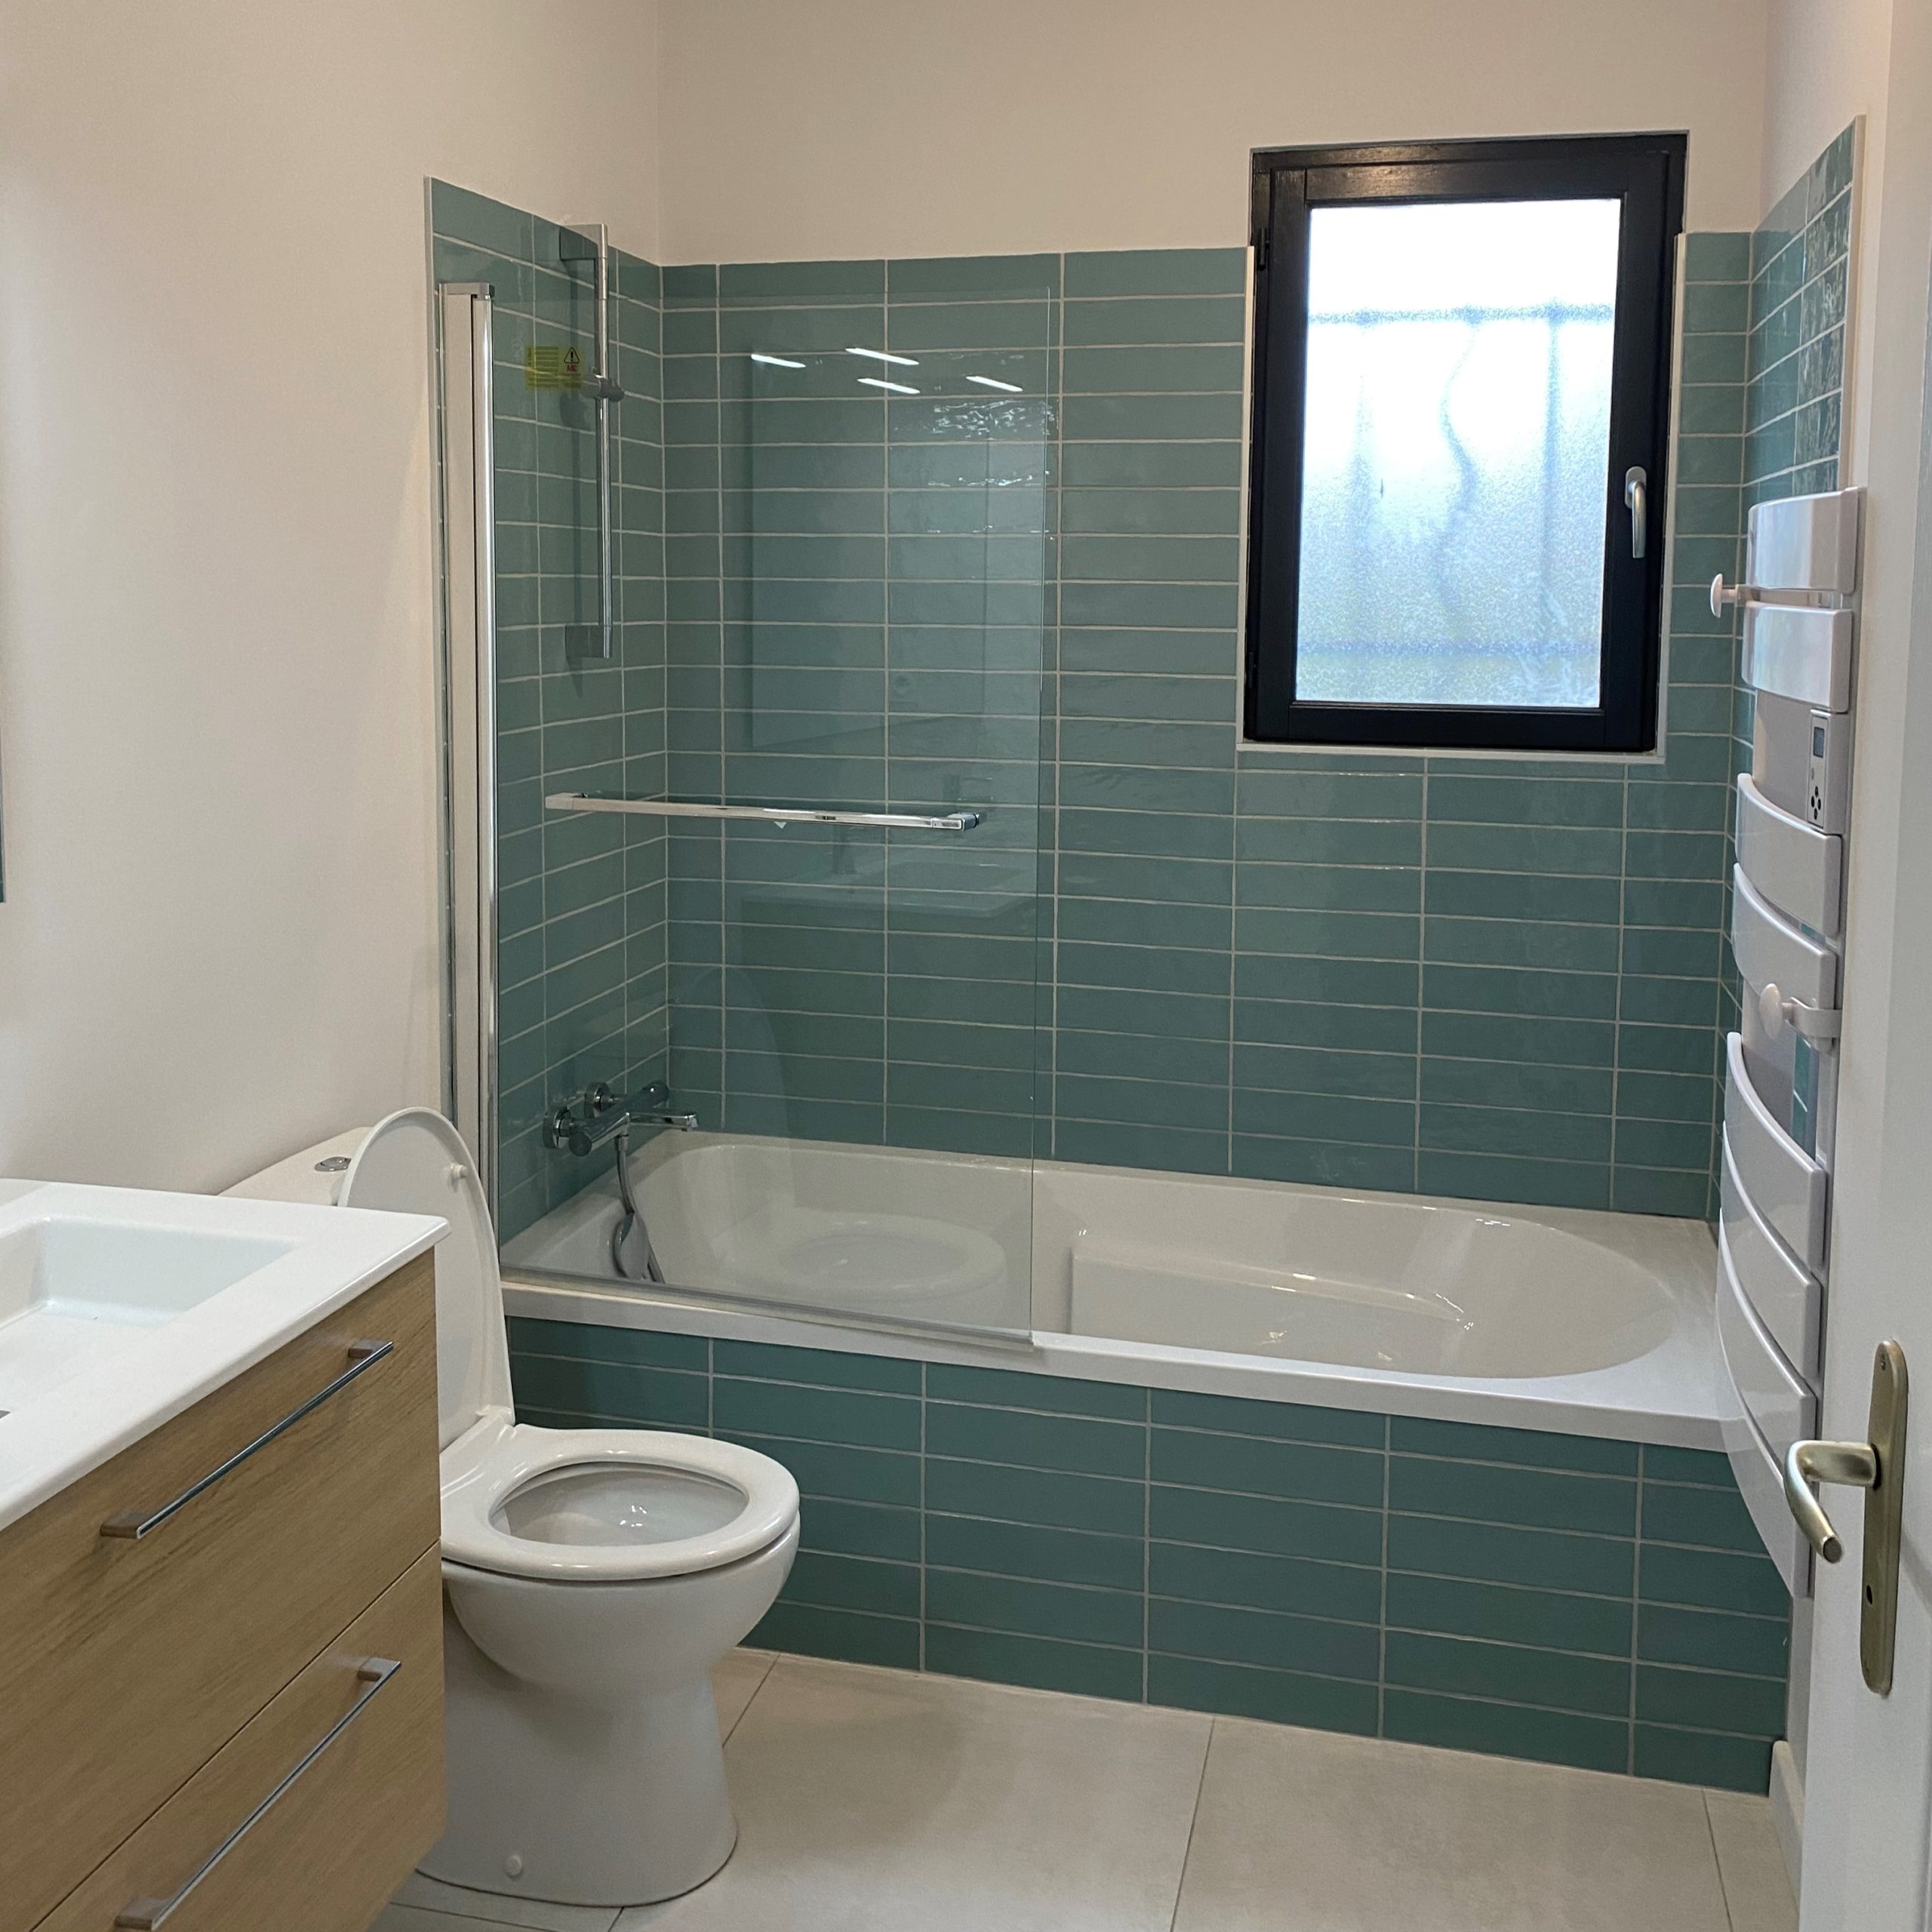 La photo montre une installation d'une salle de bain effectuée par l'entreprise PIBAROT